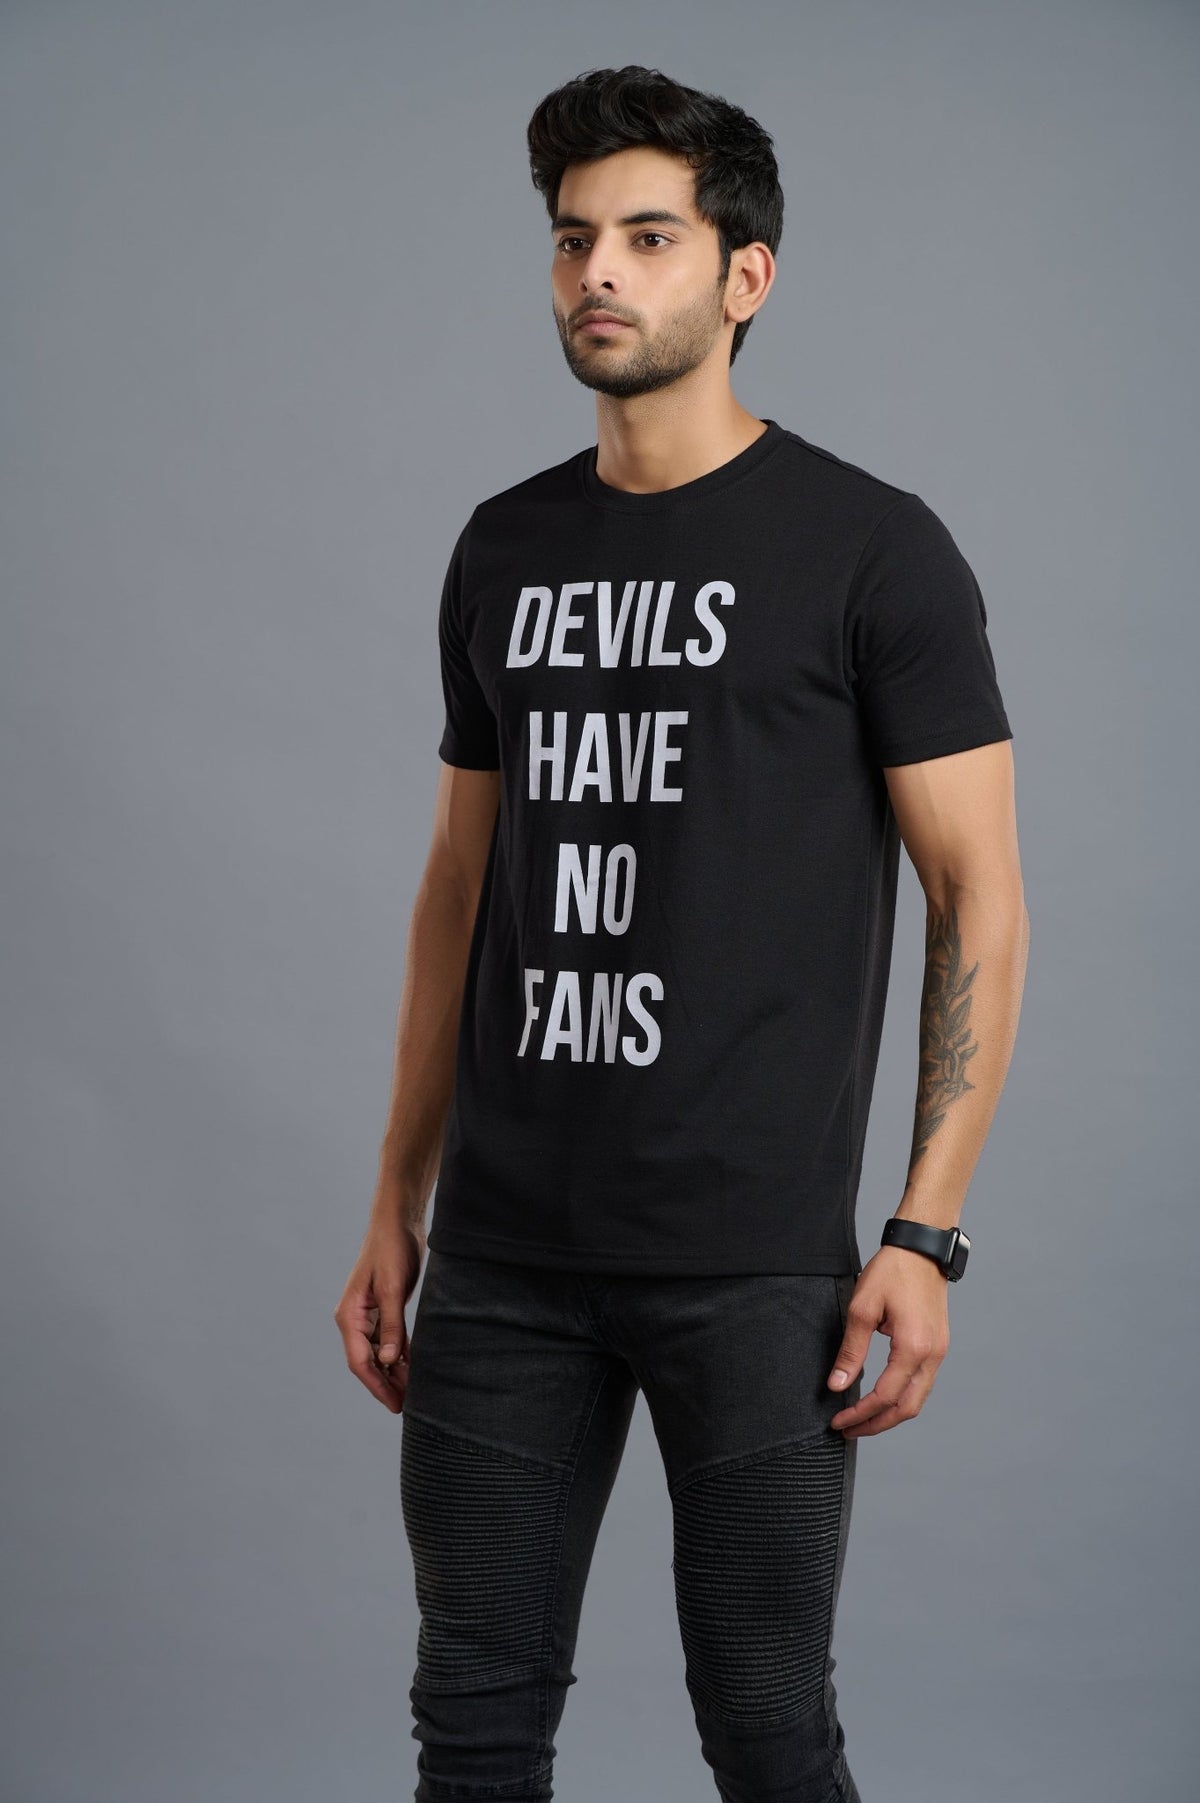 Devil's Have No Fans Printed Black T-Shirt for Men - Go Devil